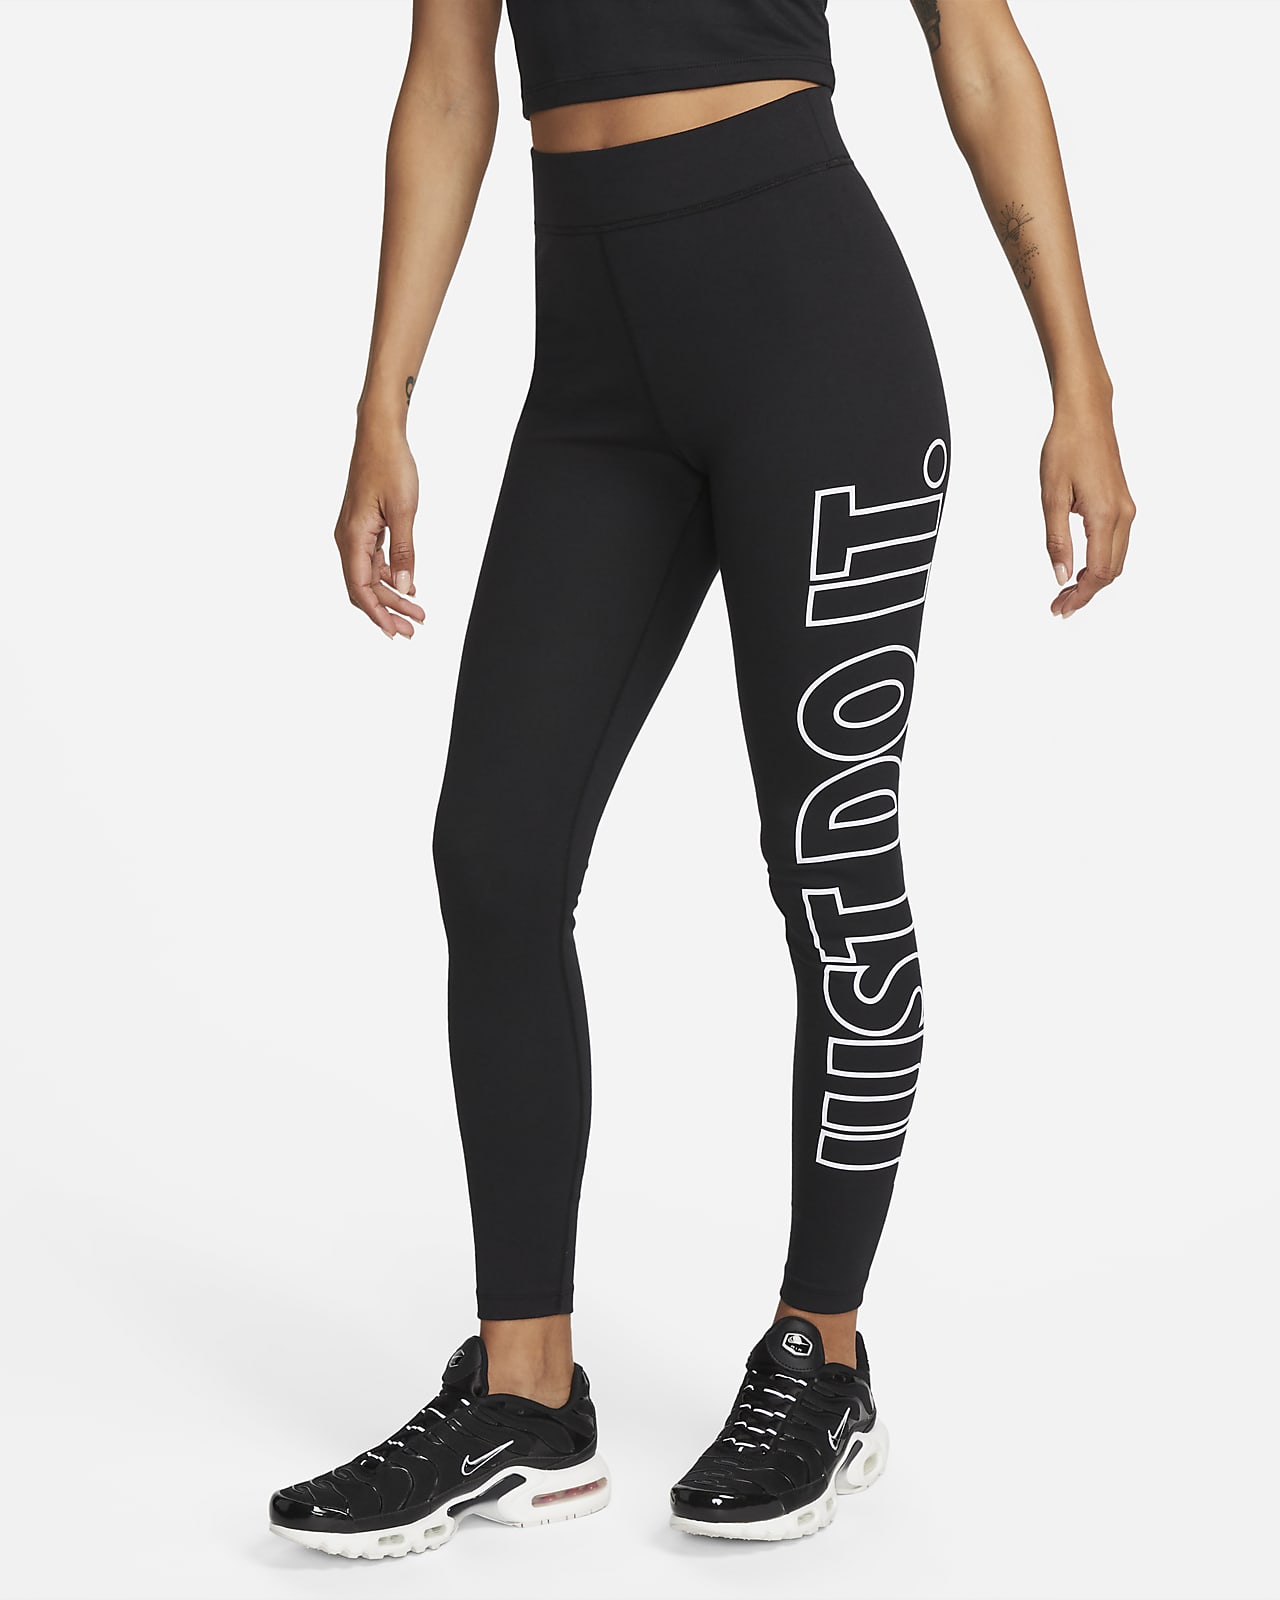 Nike One magas derekú, rövidített szárú női leggings